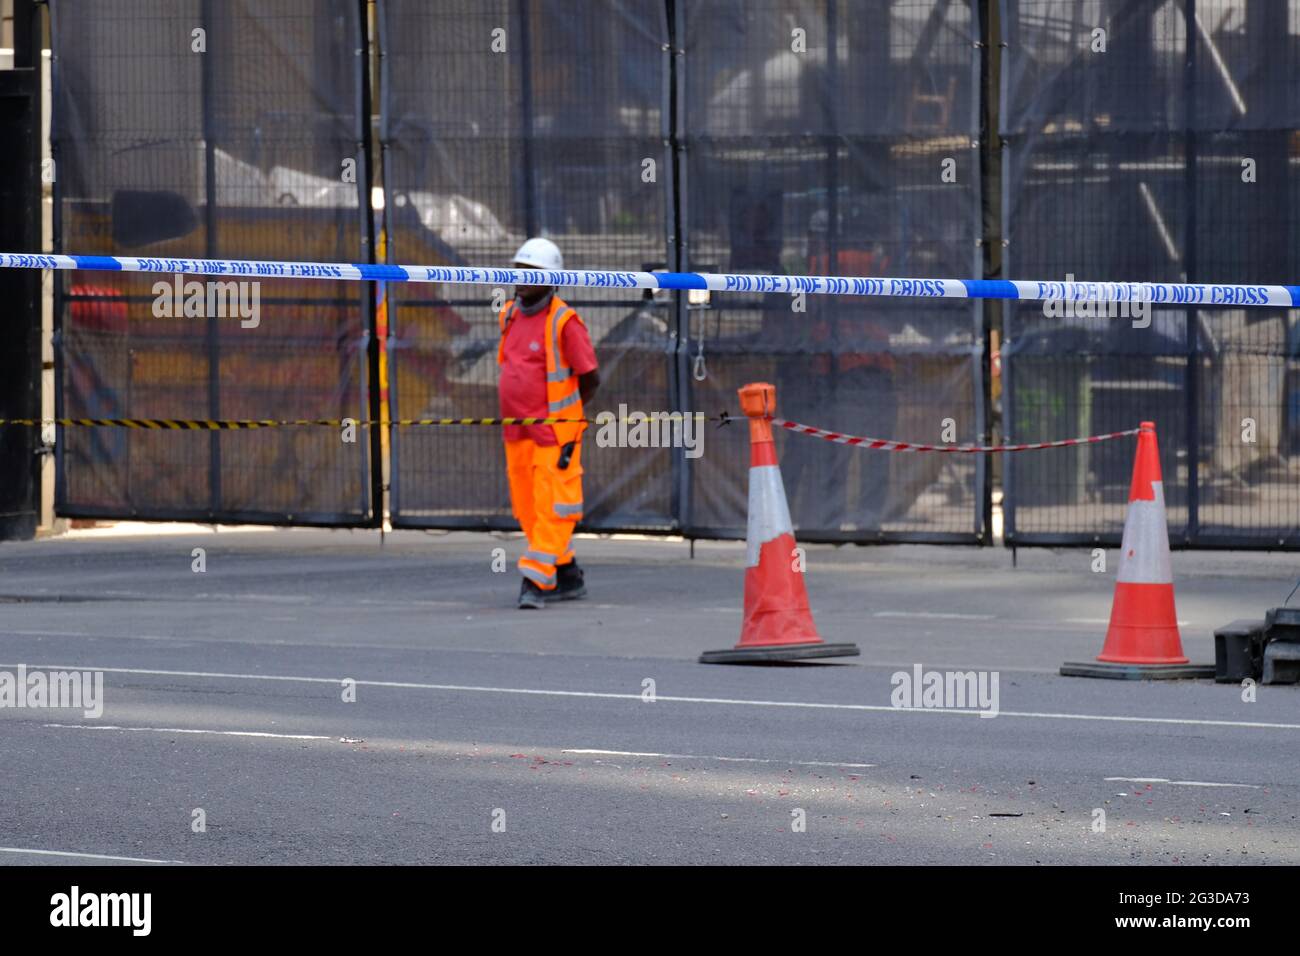 London, Großbritannien. Um die Baustelle, auf der der pro-palästinensische Protestierende Nichola George einen 300 Fuß langen Kran bestiegen hat, befindet sich eine Polizeikordon. Stockfoto